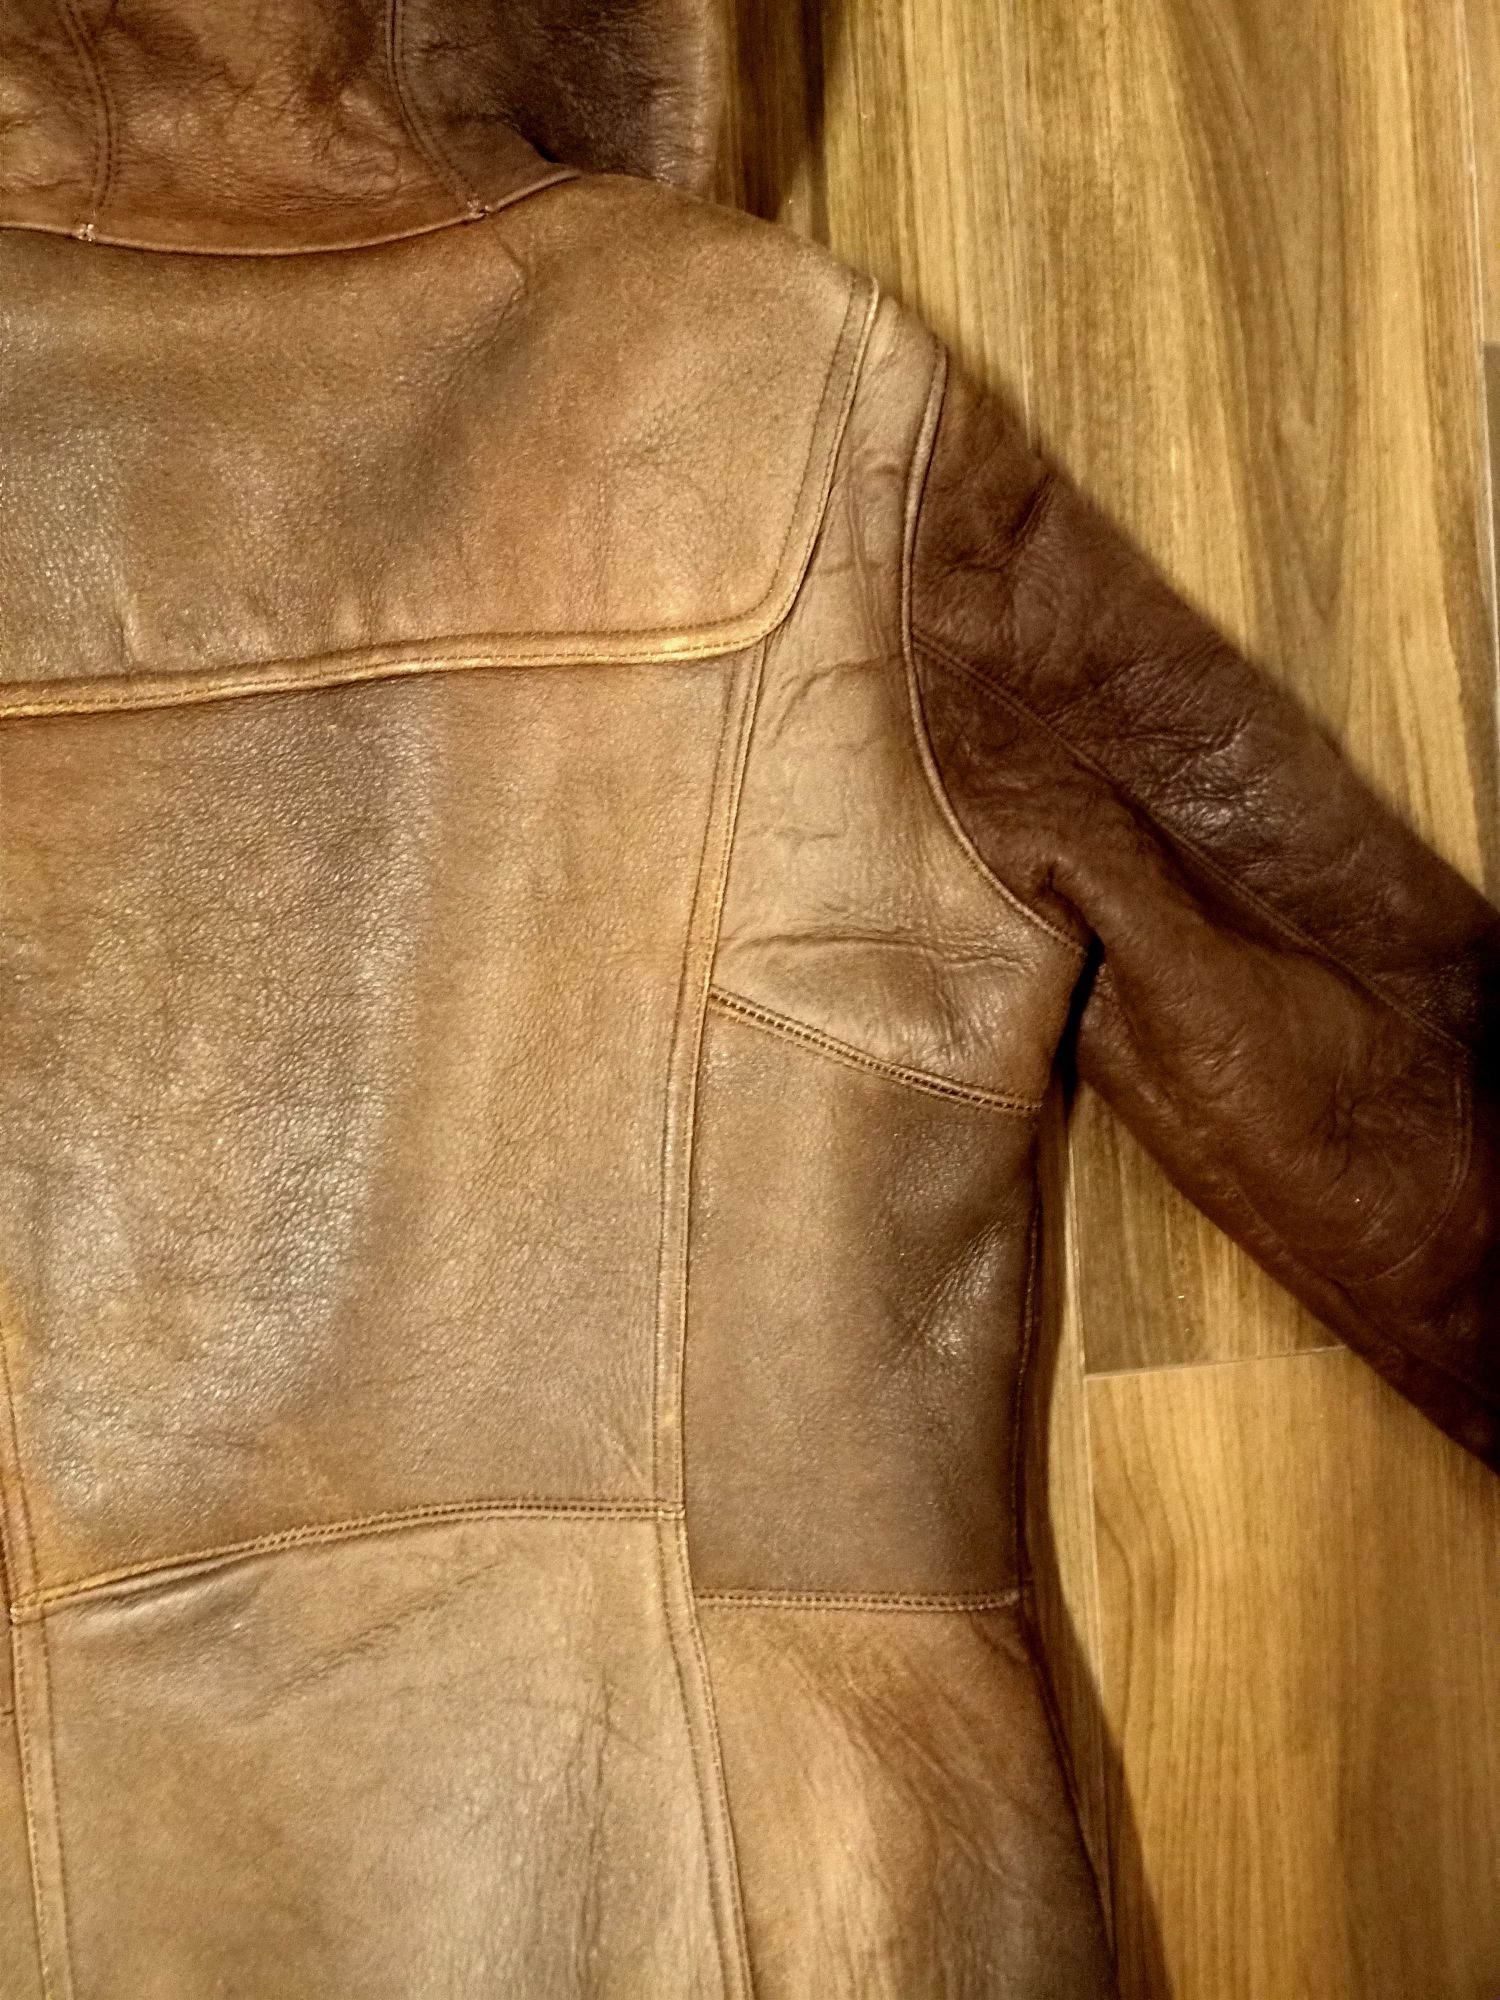 Kożuch damski płaszcz skóra naturalna owcza płaszcz brązowy 38 vintge